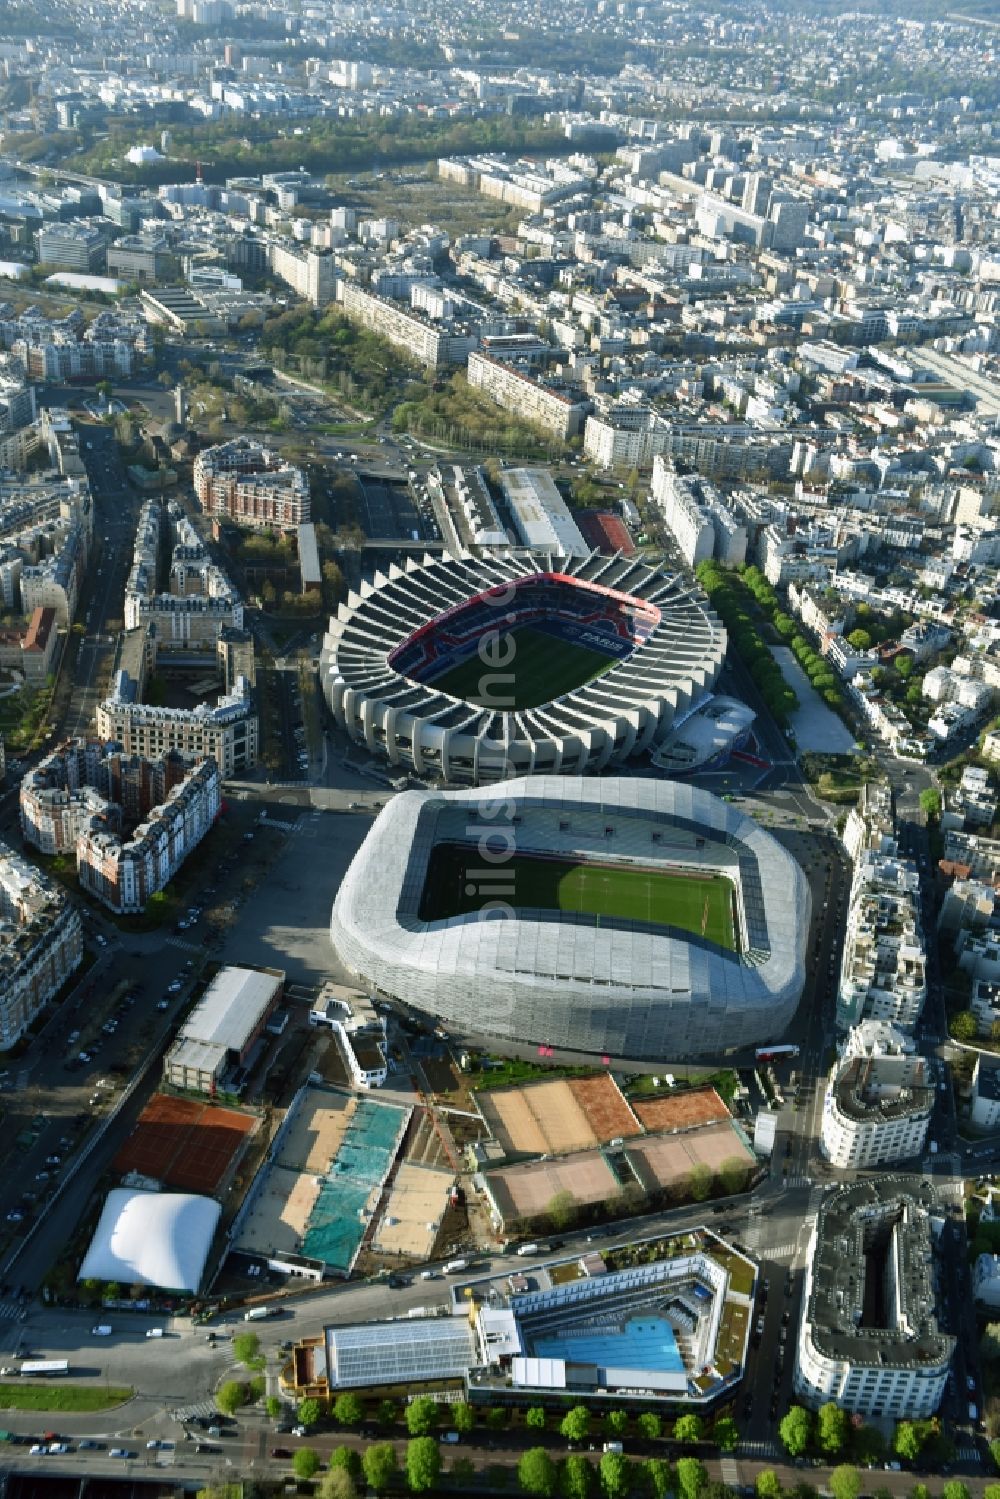 Luftaufnahme Paris - Sportstätten-Gelände der Arena des Stadion Stade Jean Bouin an der Avenue du General Sarrail in Paris in Ile-de-France, Frankreich